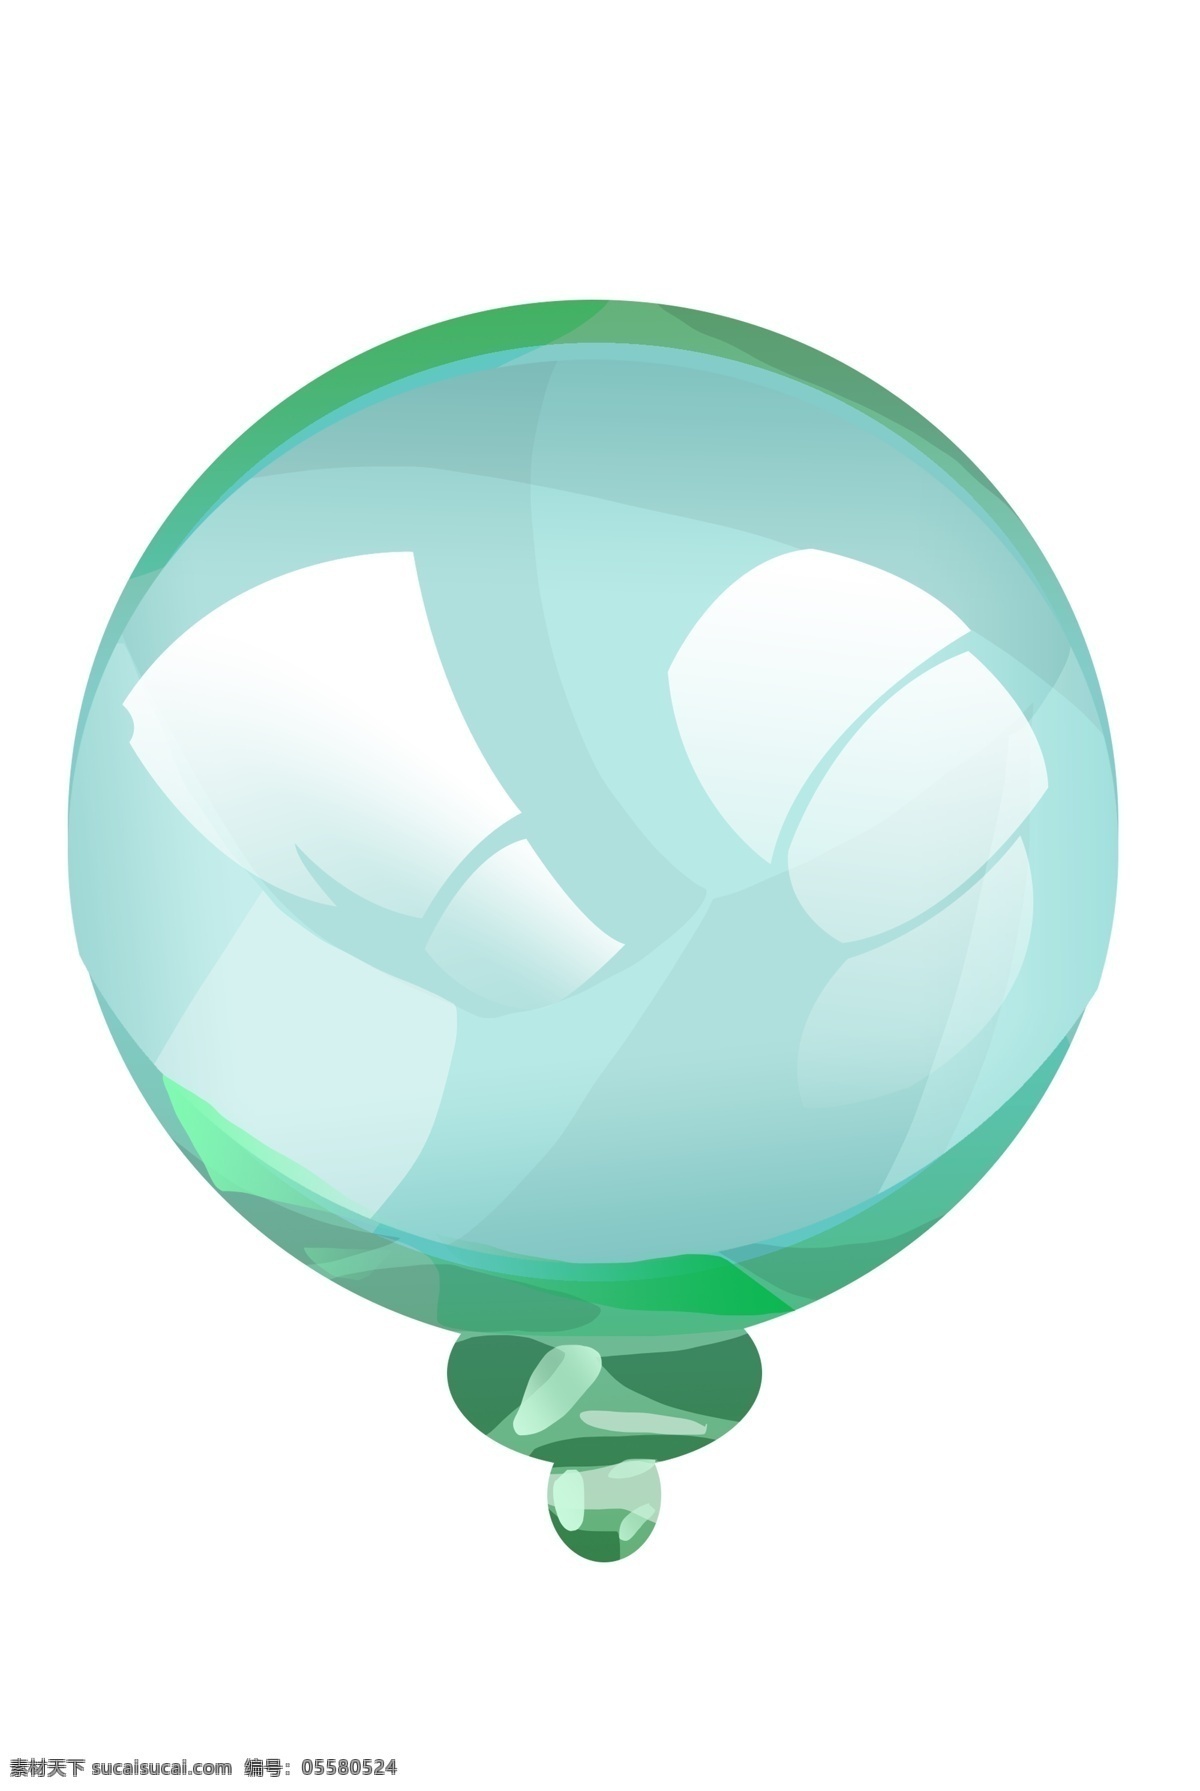 绿色 玻璃球 容器 插画 圆形玻璃容器 绿色玻璃球 卡通 圆圆的玻璃球 玻璃球瓶子